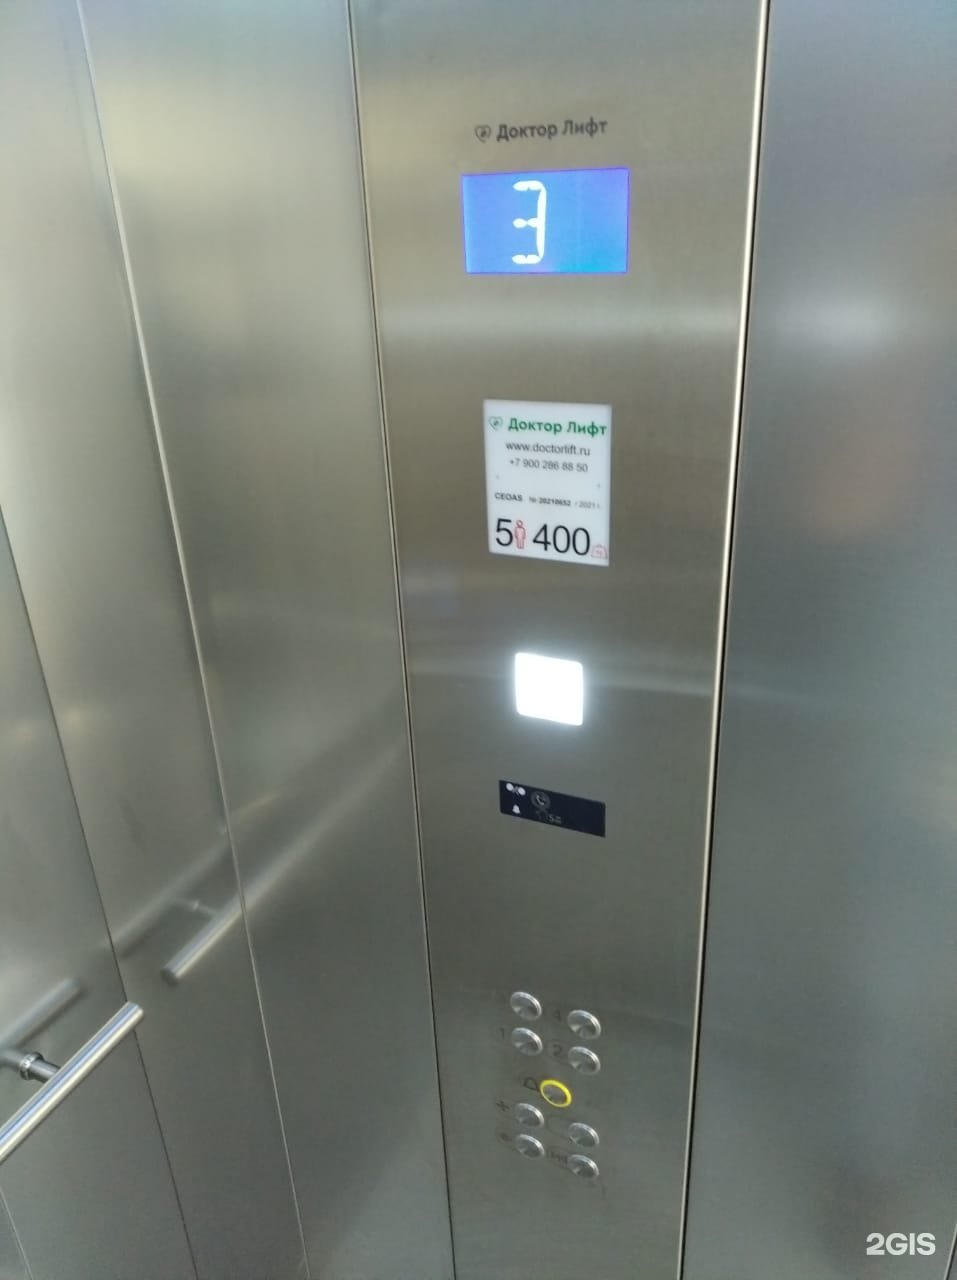 Доктор лифт Сочи. Сервисный лифт. Номер лифтовой компании. Врач в лифте.